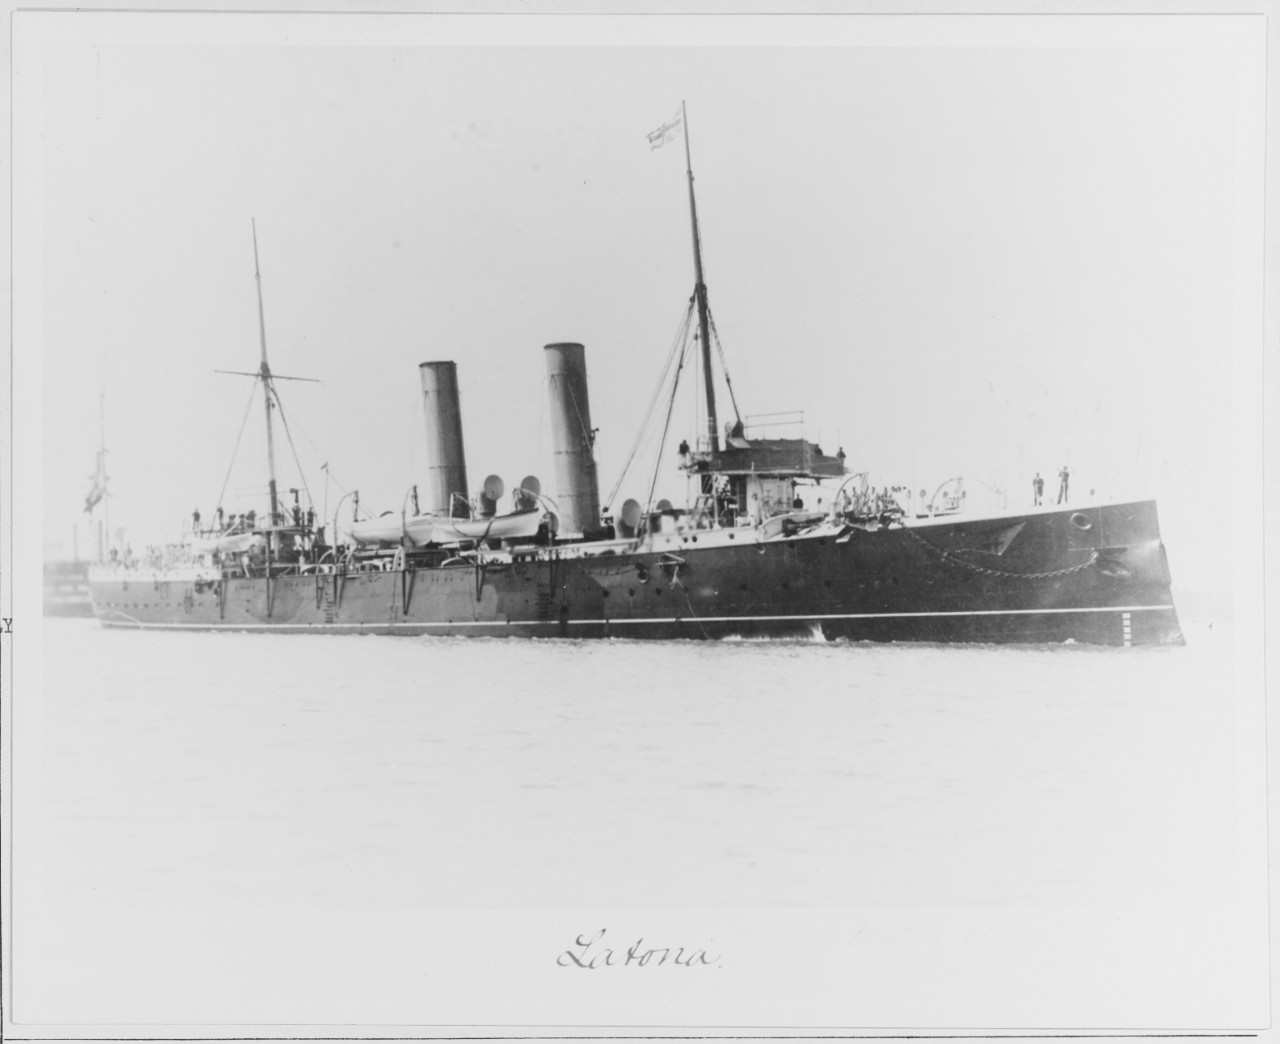 HMS LATONA (British cruiser, 1890)